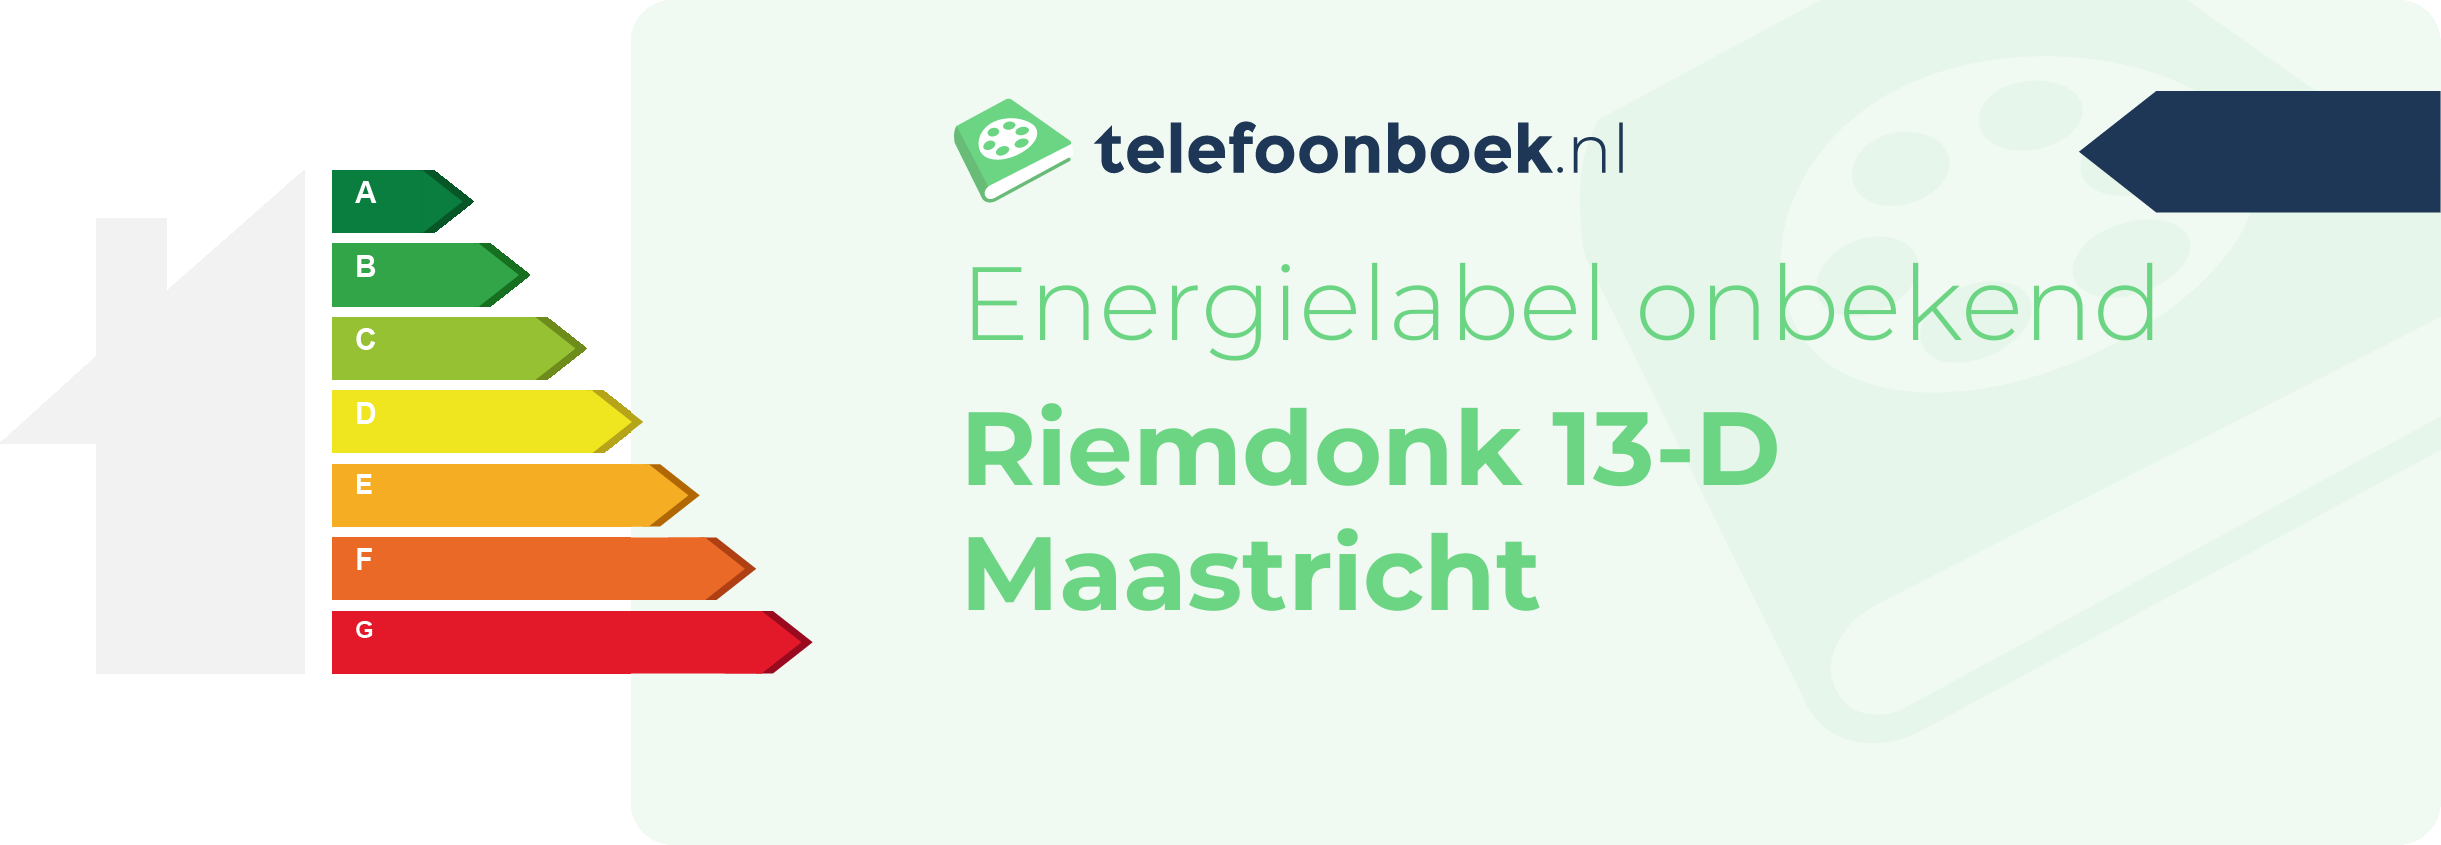 Energielabel Riemdonk 13-D Maastricht